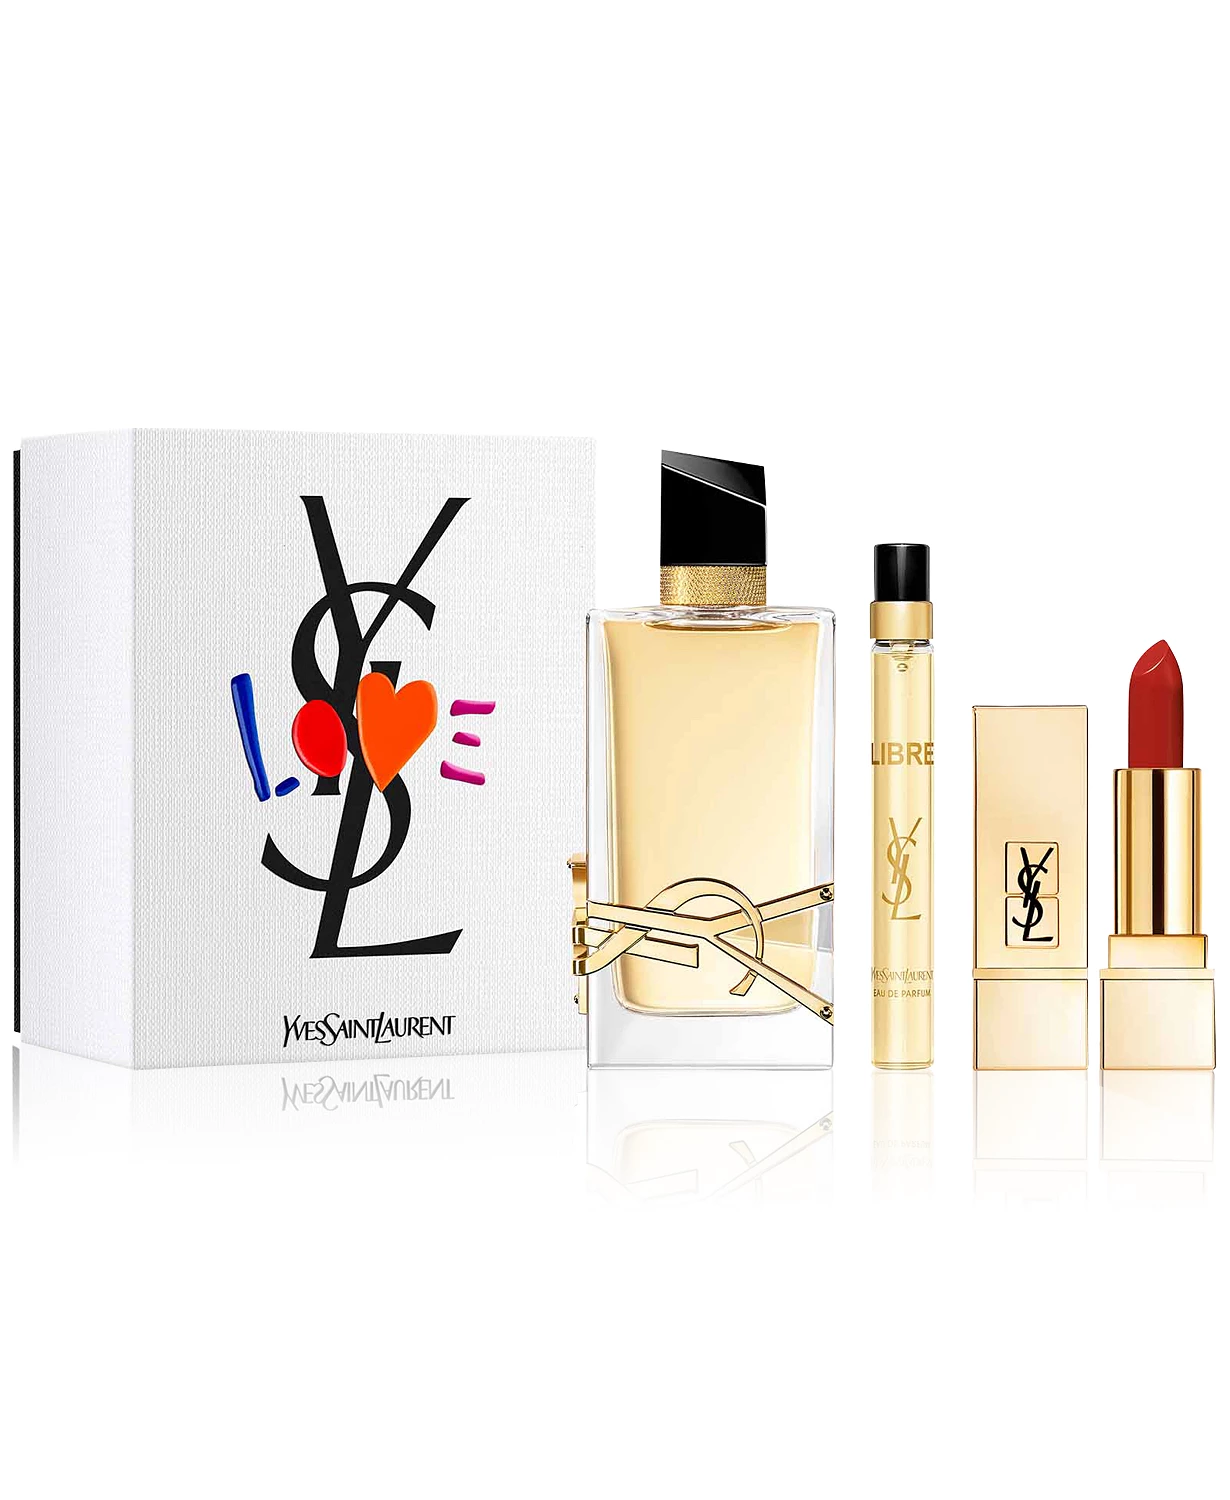 Yves Saint Laurent 3-Pc. Libre Eau de Parfum Gift Set $140.00